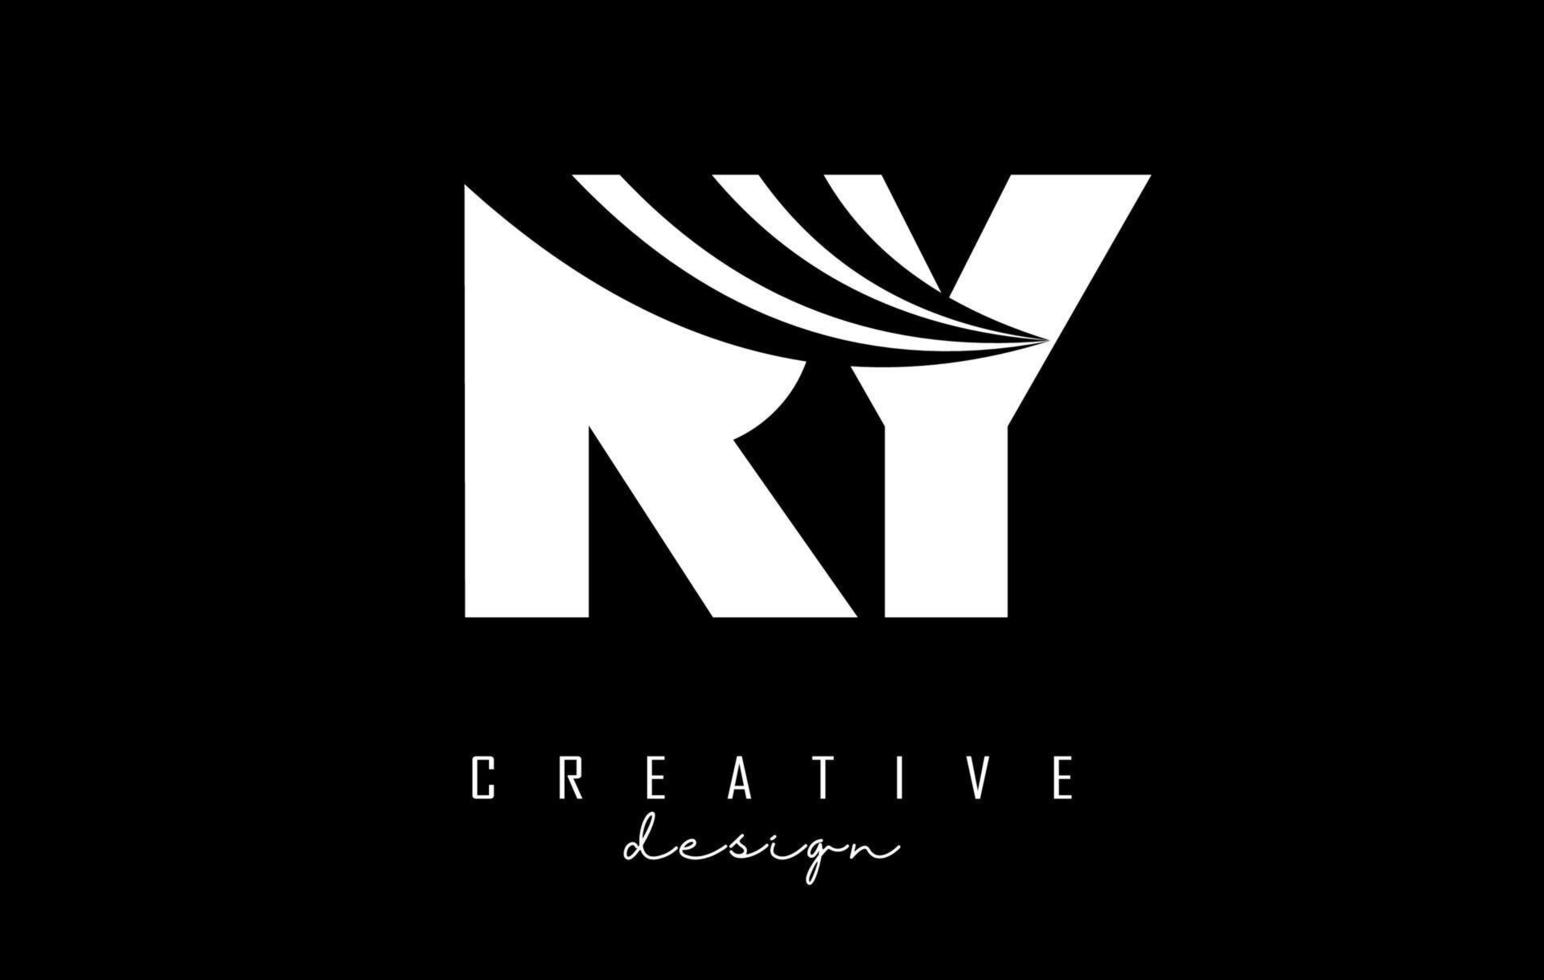 kreative weiße buchstaben ry ry logo mit führenden linien und straßenkonzeptdesign. Buchstaben mit geometrischem Design. vektor